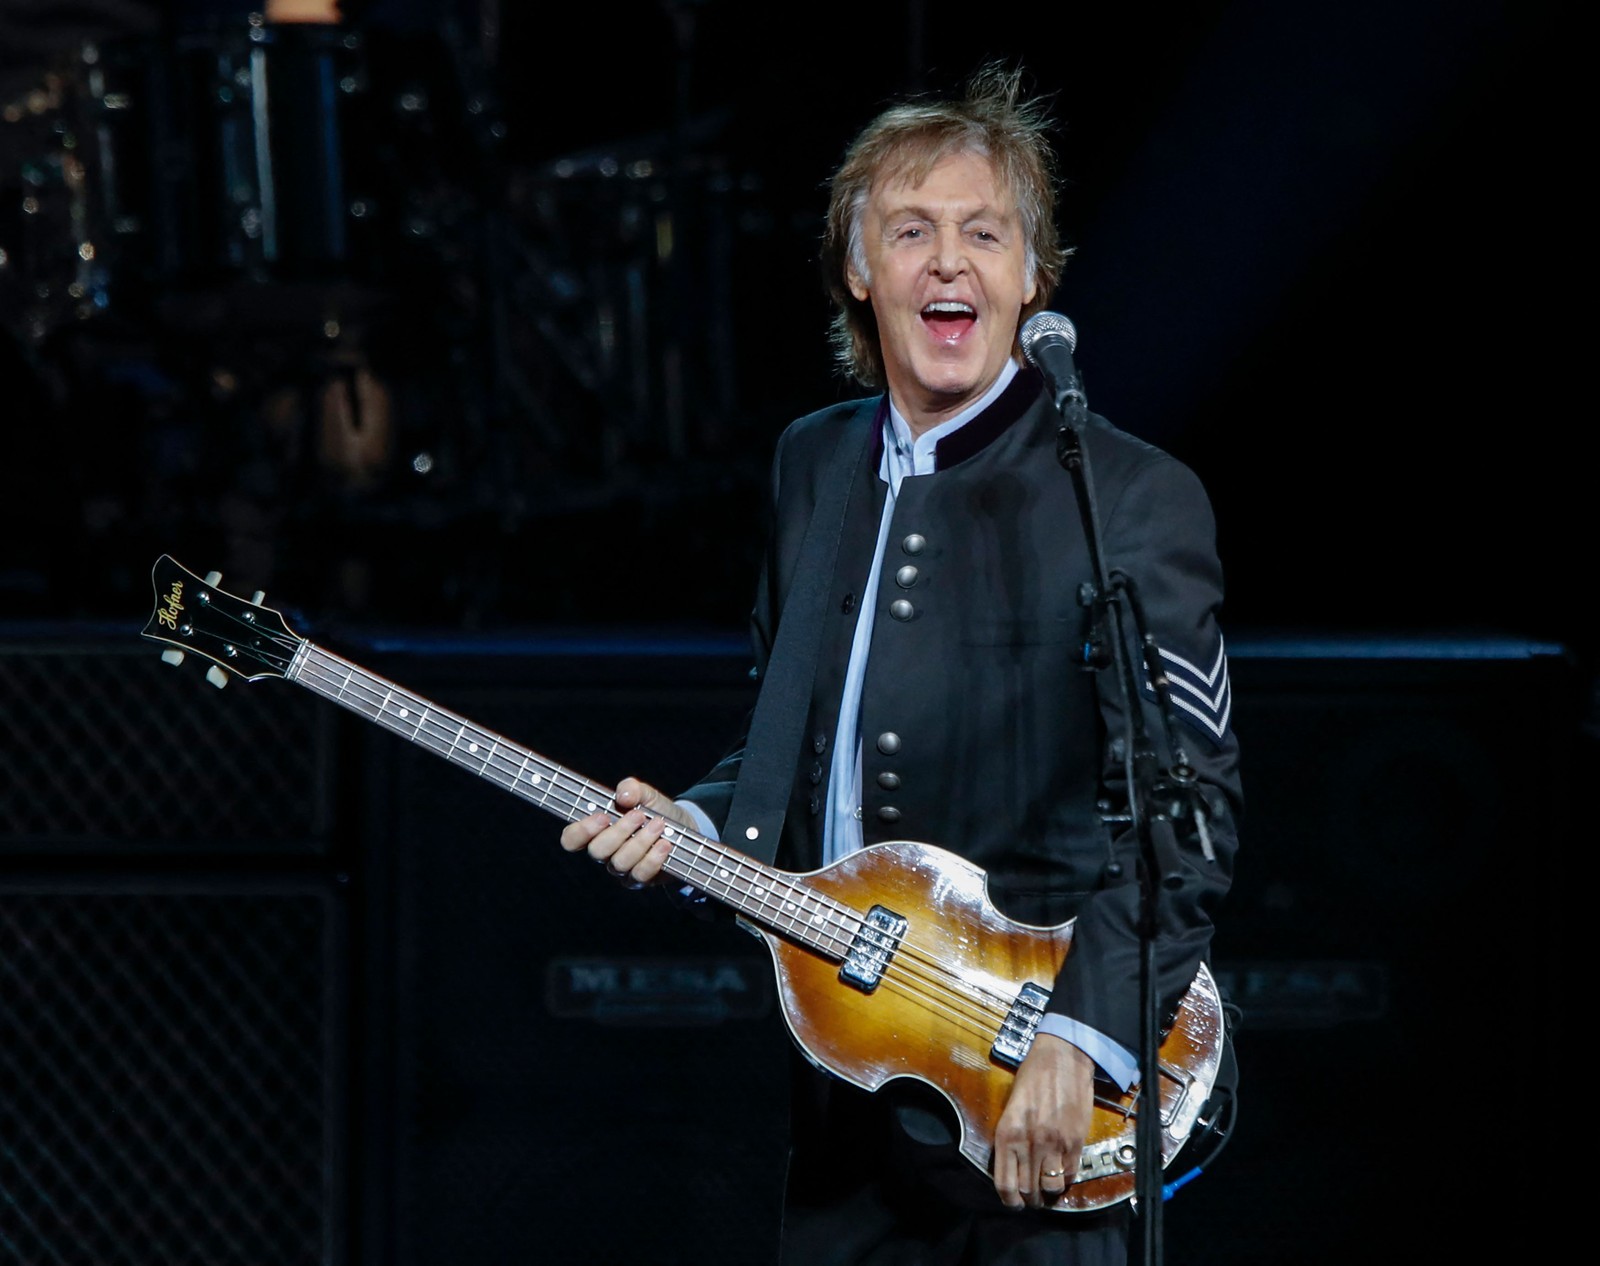 O músico britânico Paul McCartney se apresenta durante um concerto como parte de sua turnê, em 2017. — Foto: Kamil Krzaczynski / AFP